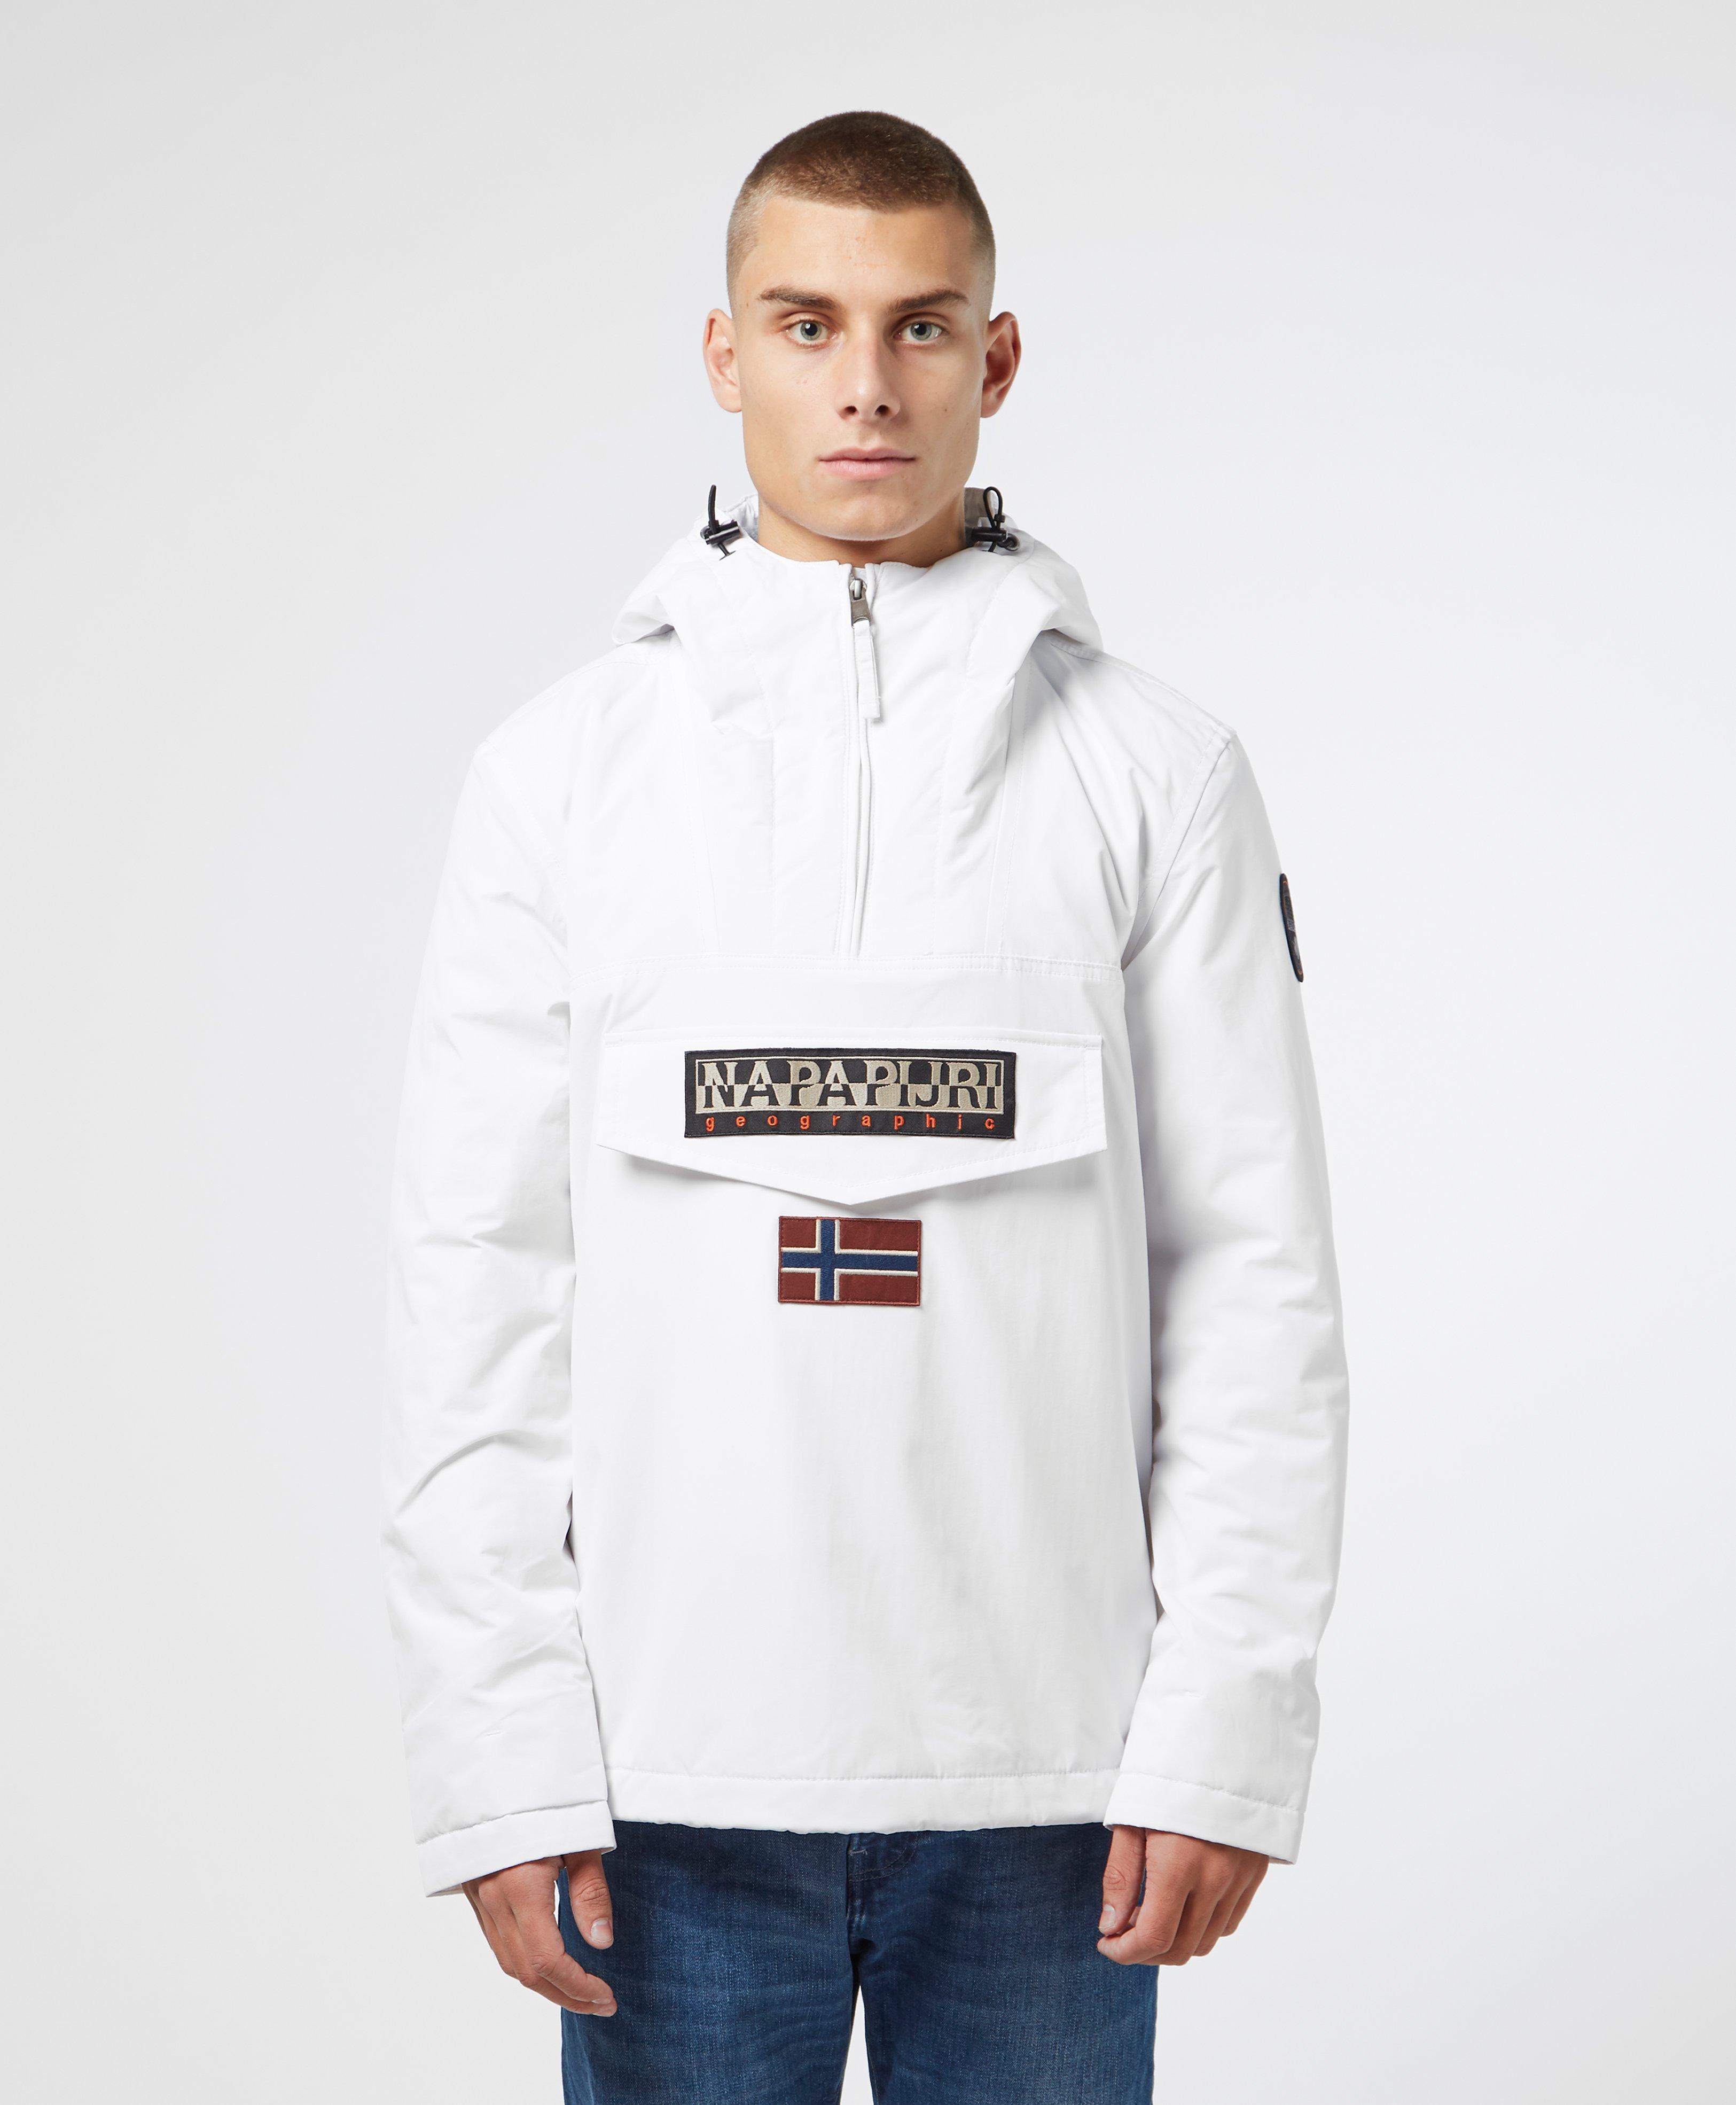 Napapijri Skidoo Jacket in White for Men | Lyst